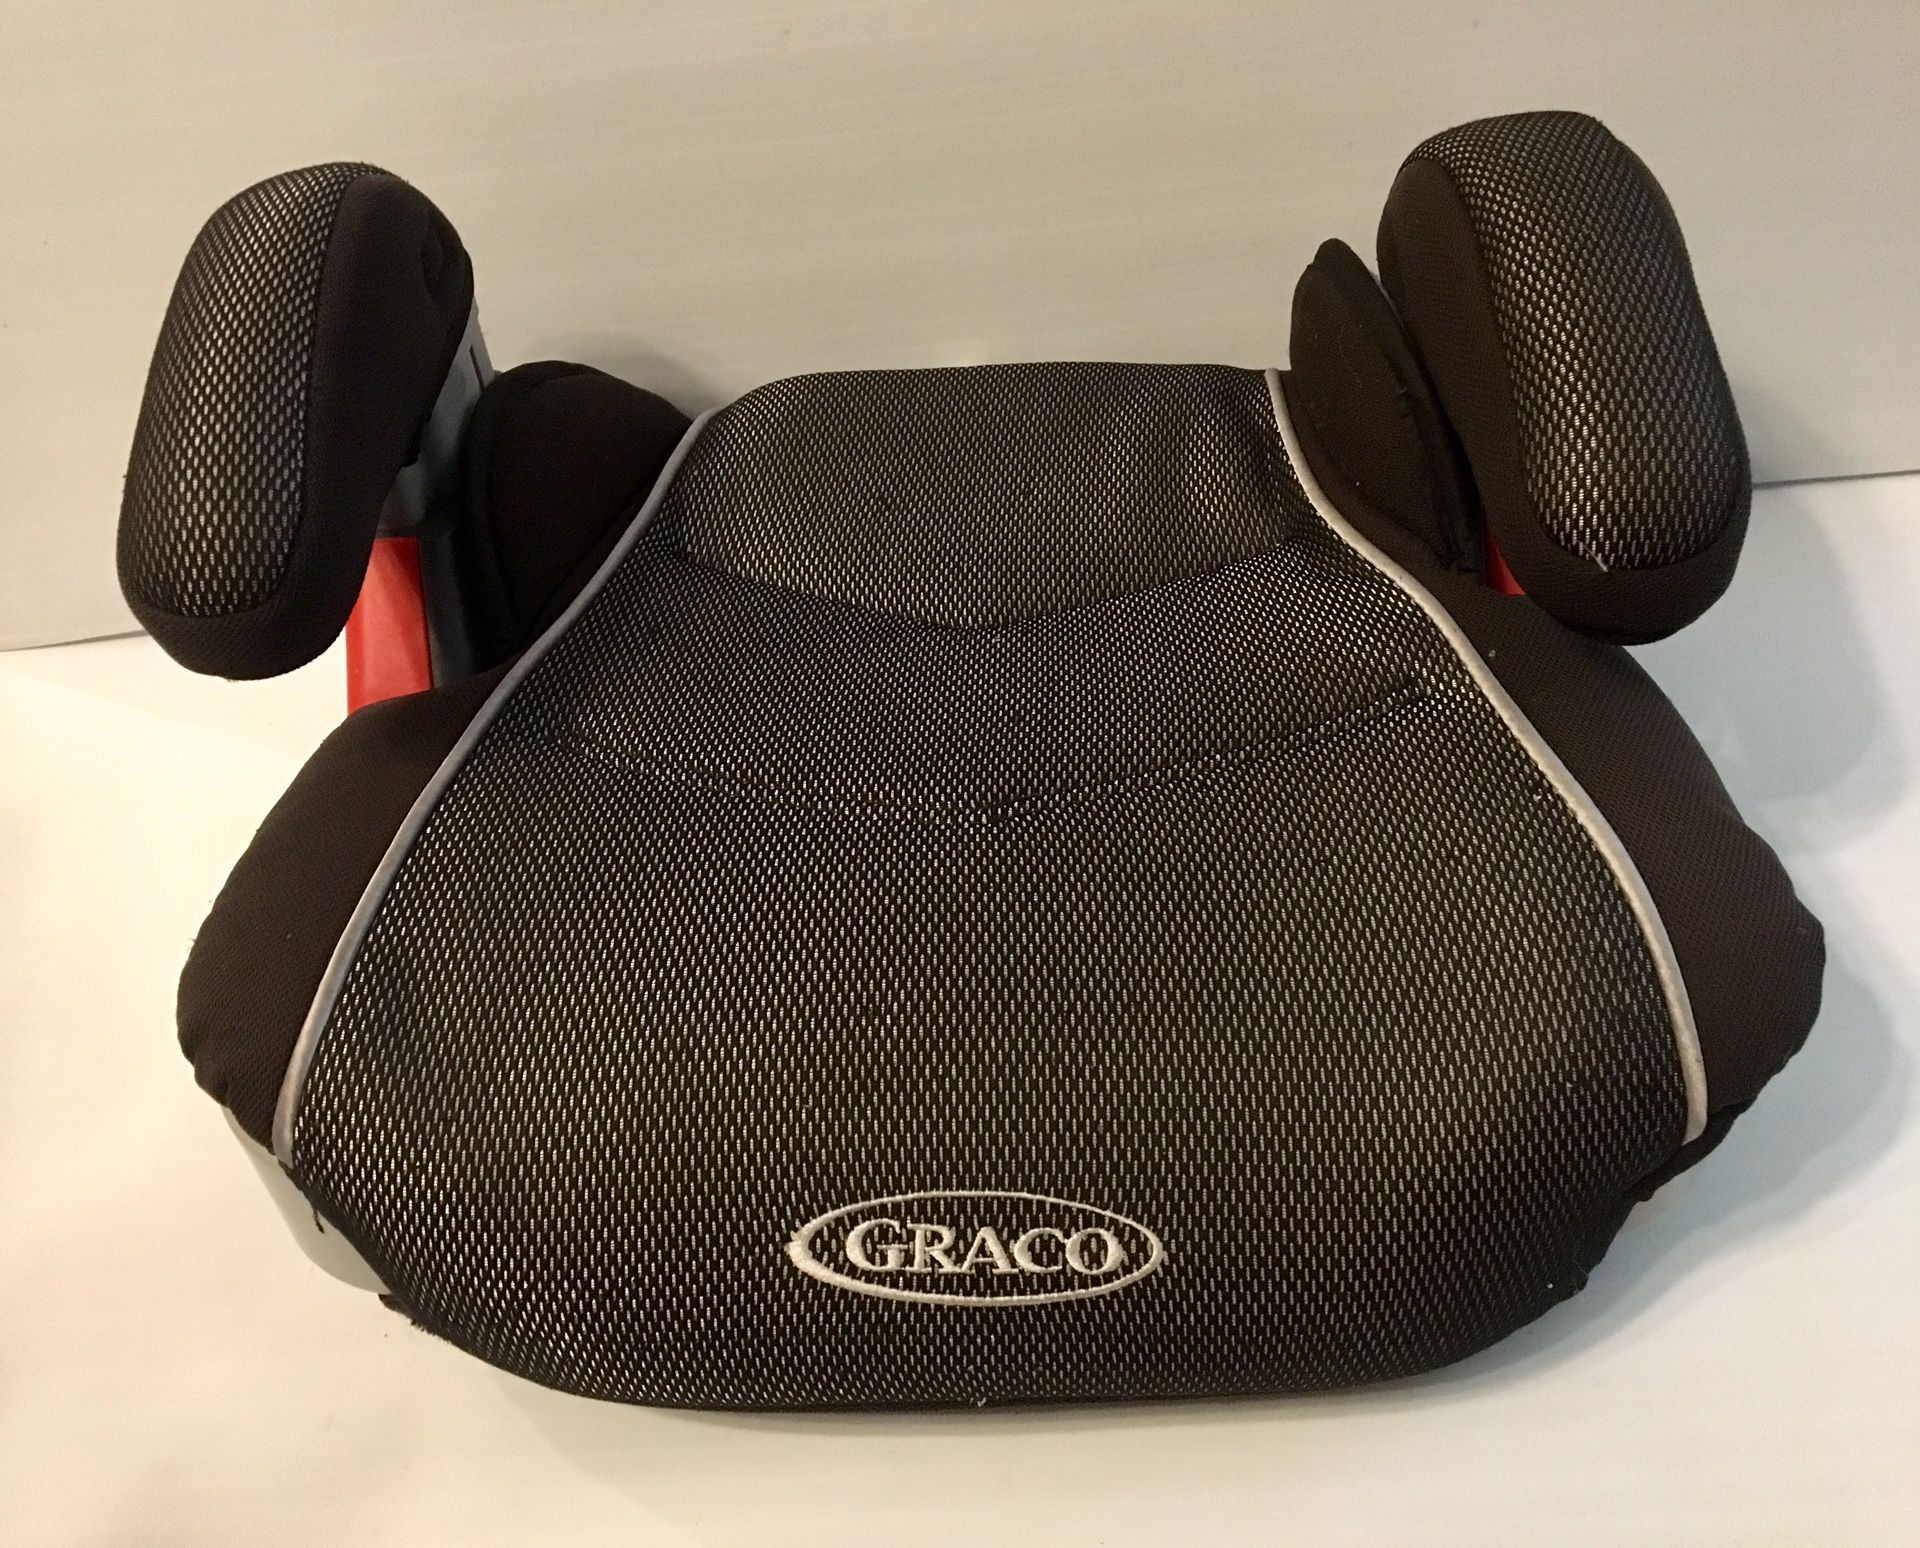 Graco Kids Car Seat